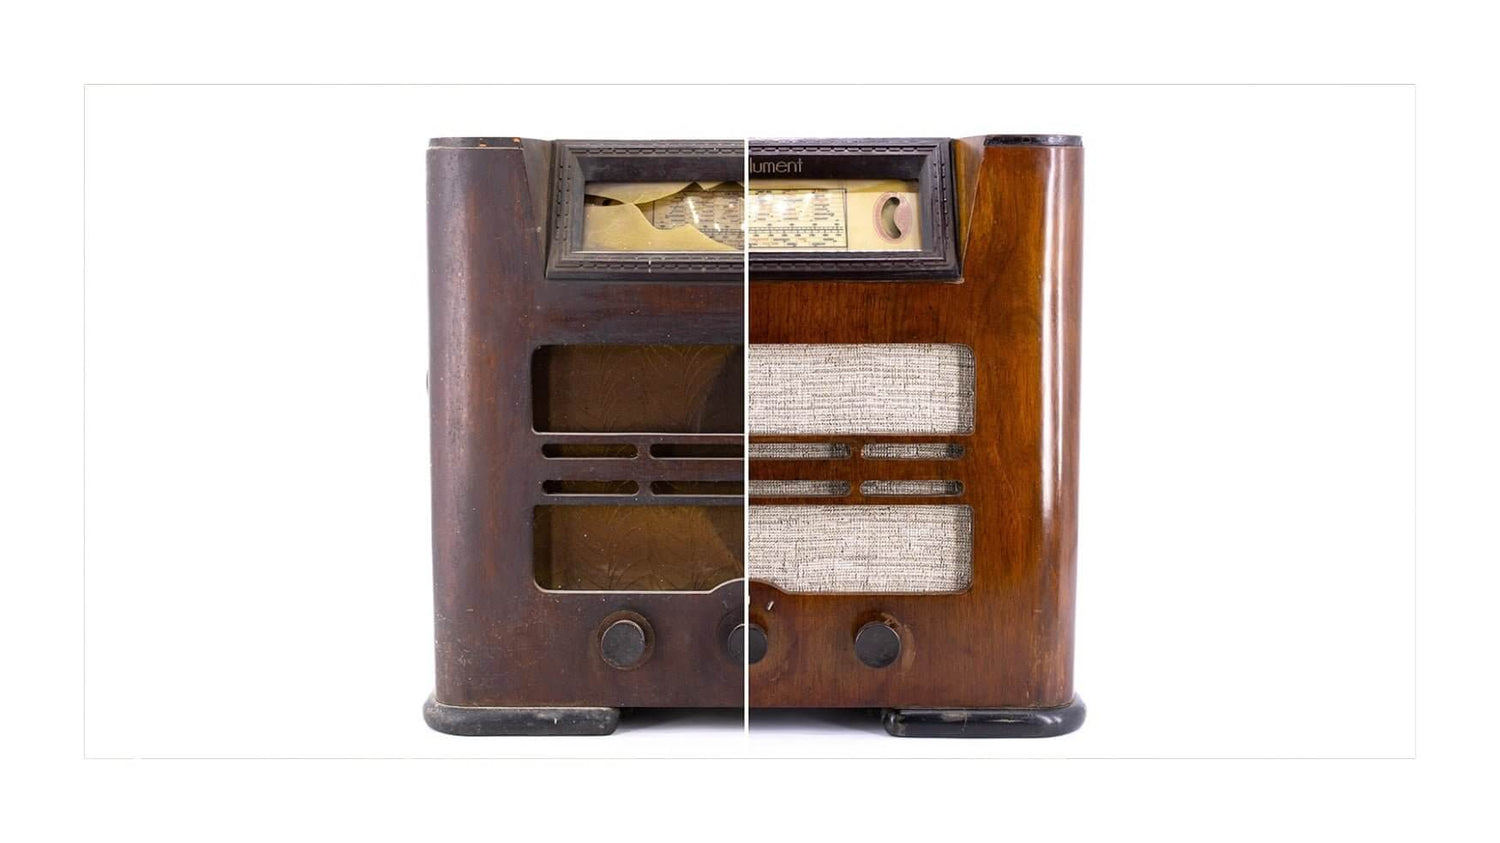 Ébénisterie et savoir-faire pour la restauration des vieilles radios.-absolument-enceintes-et-radios-vintage-bluetooth-design